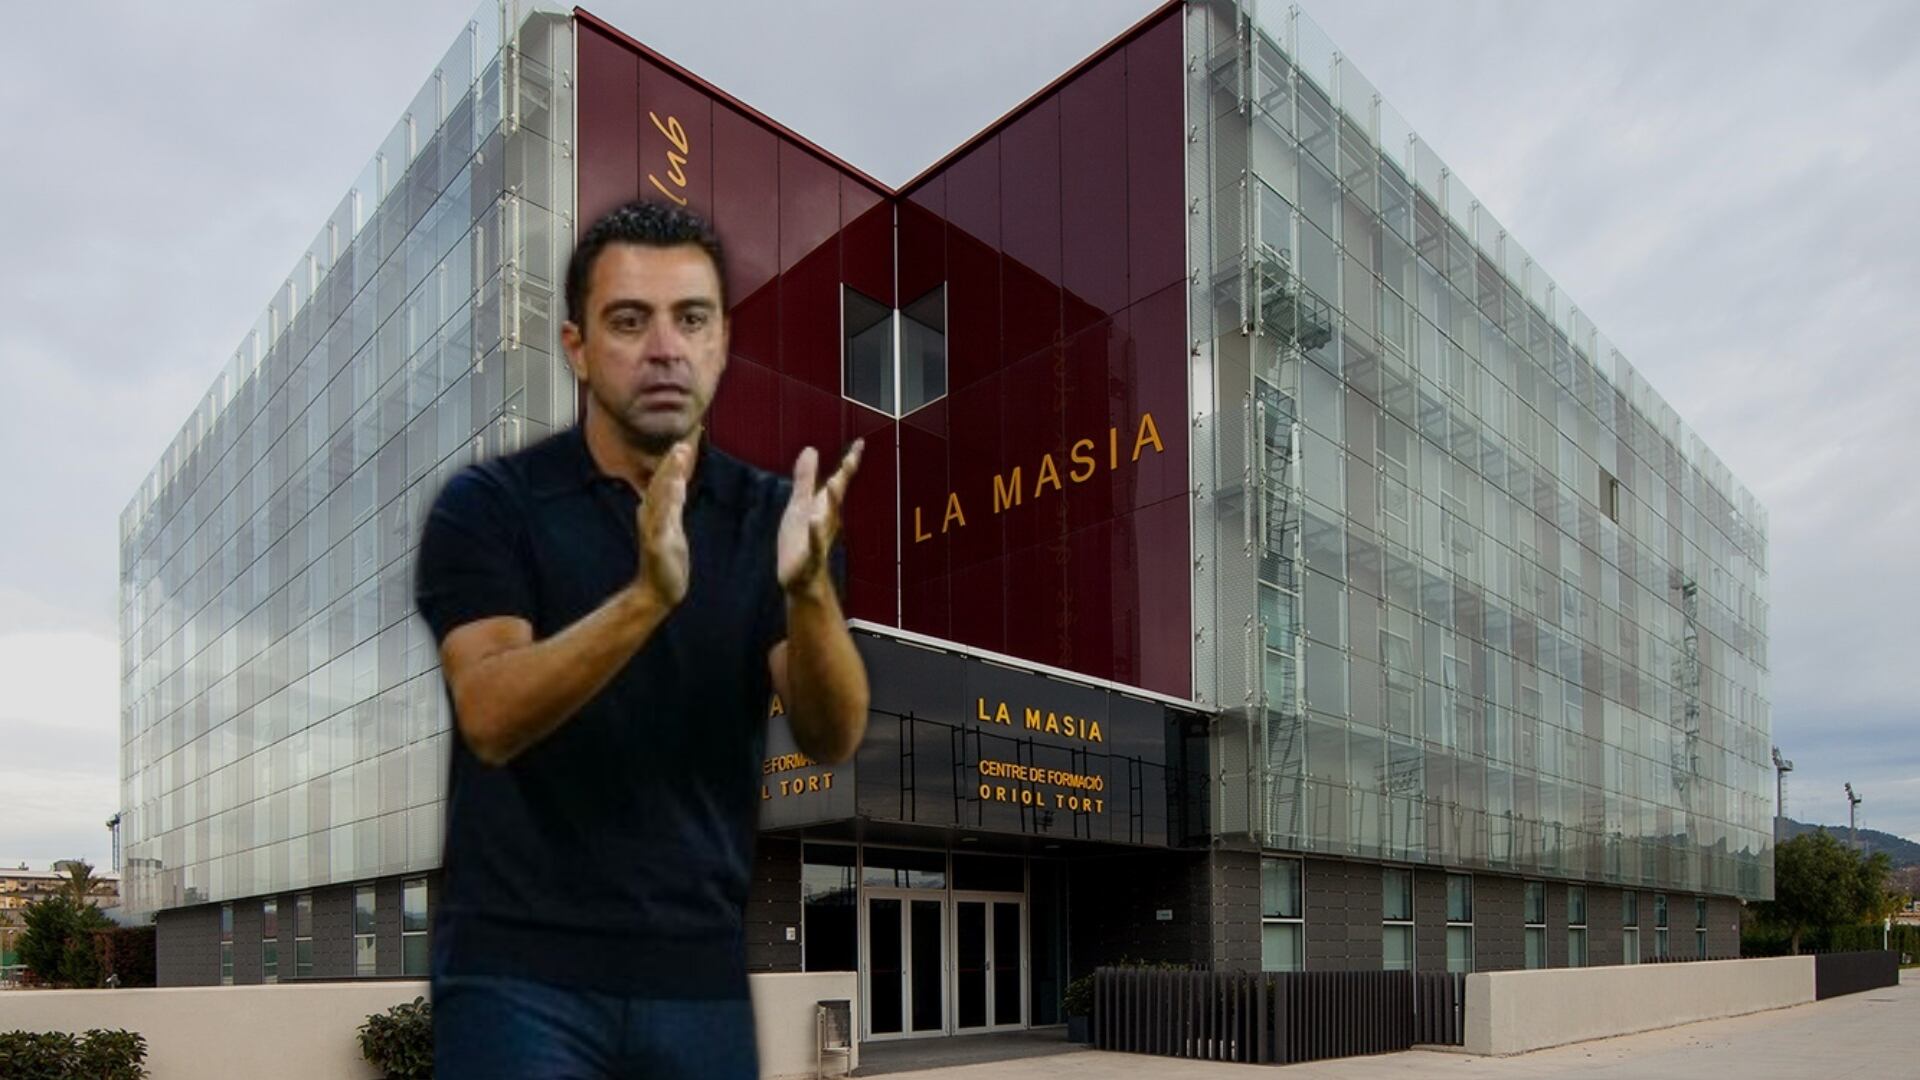 Habló la afición, las estrellas de La Masía que piden de regreso en el Barça